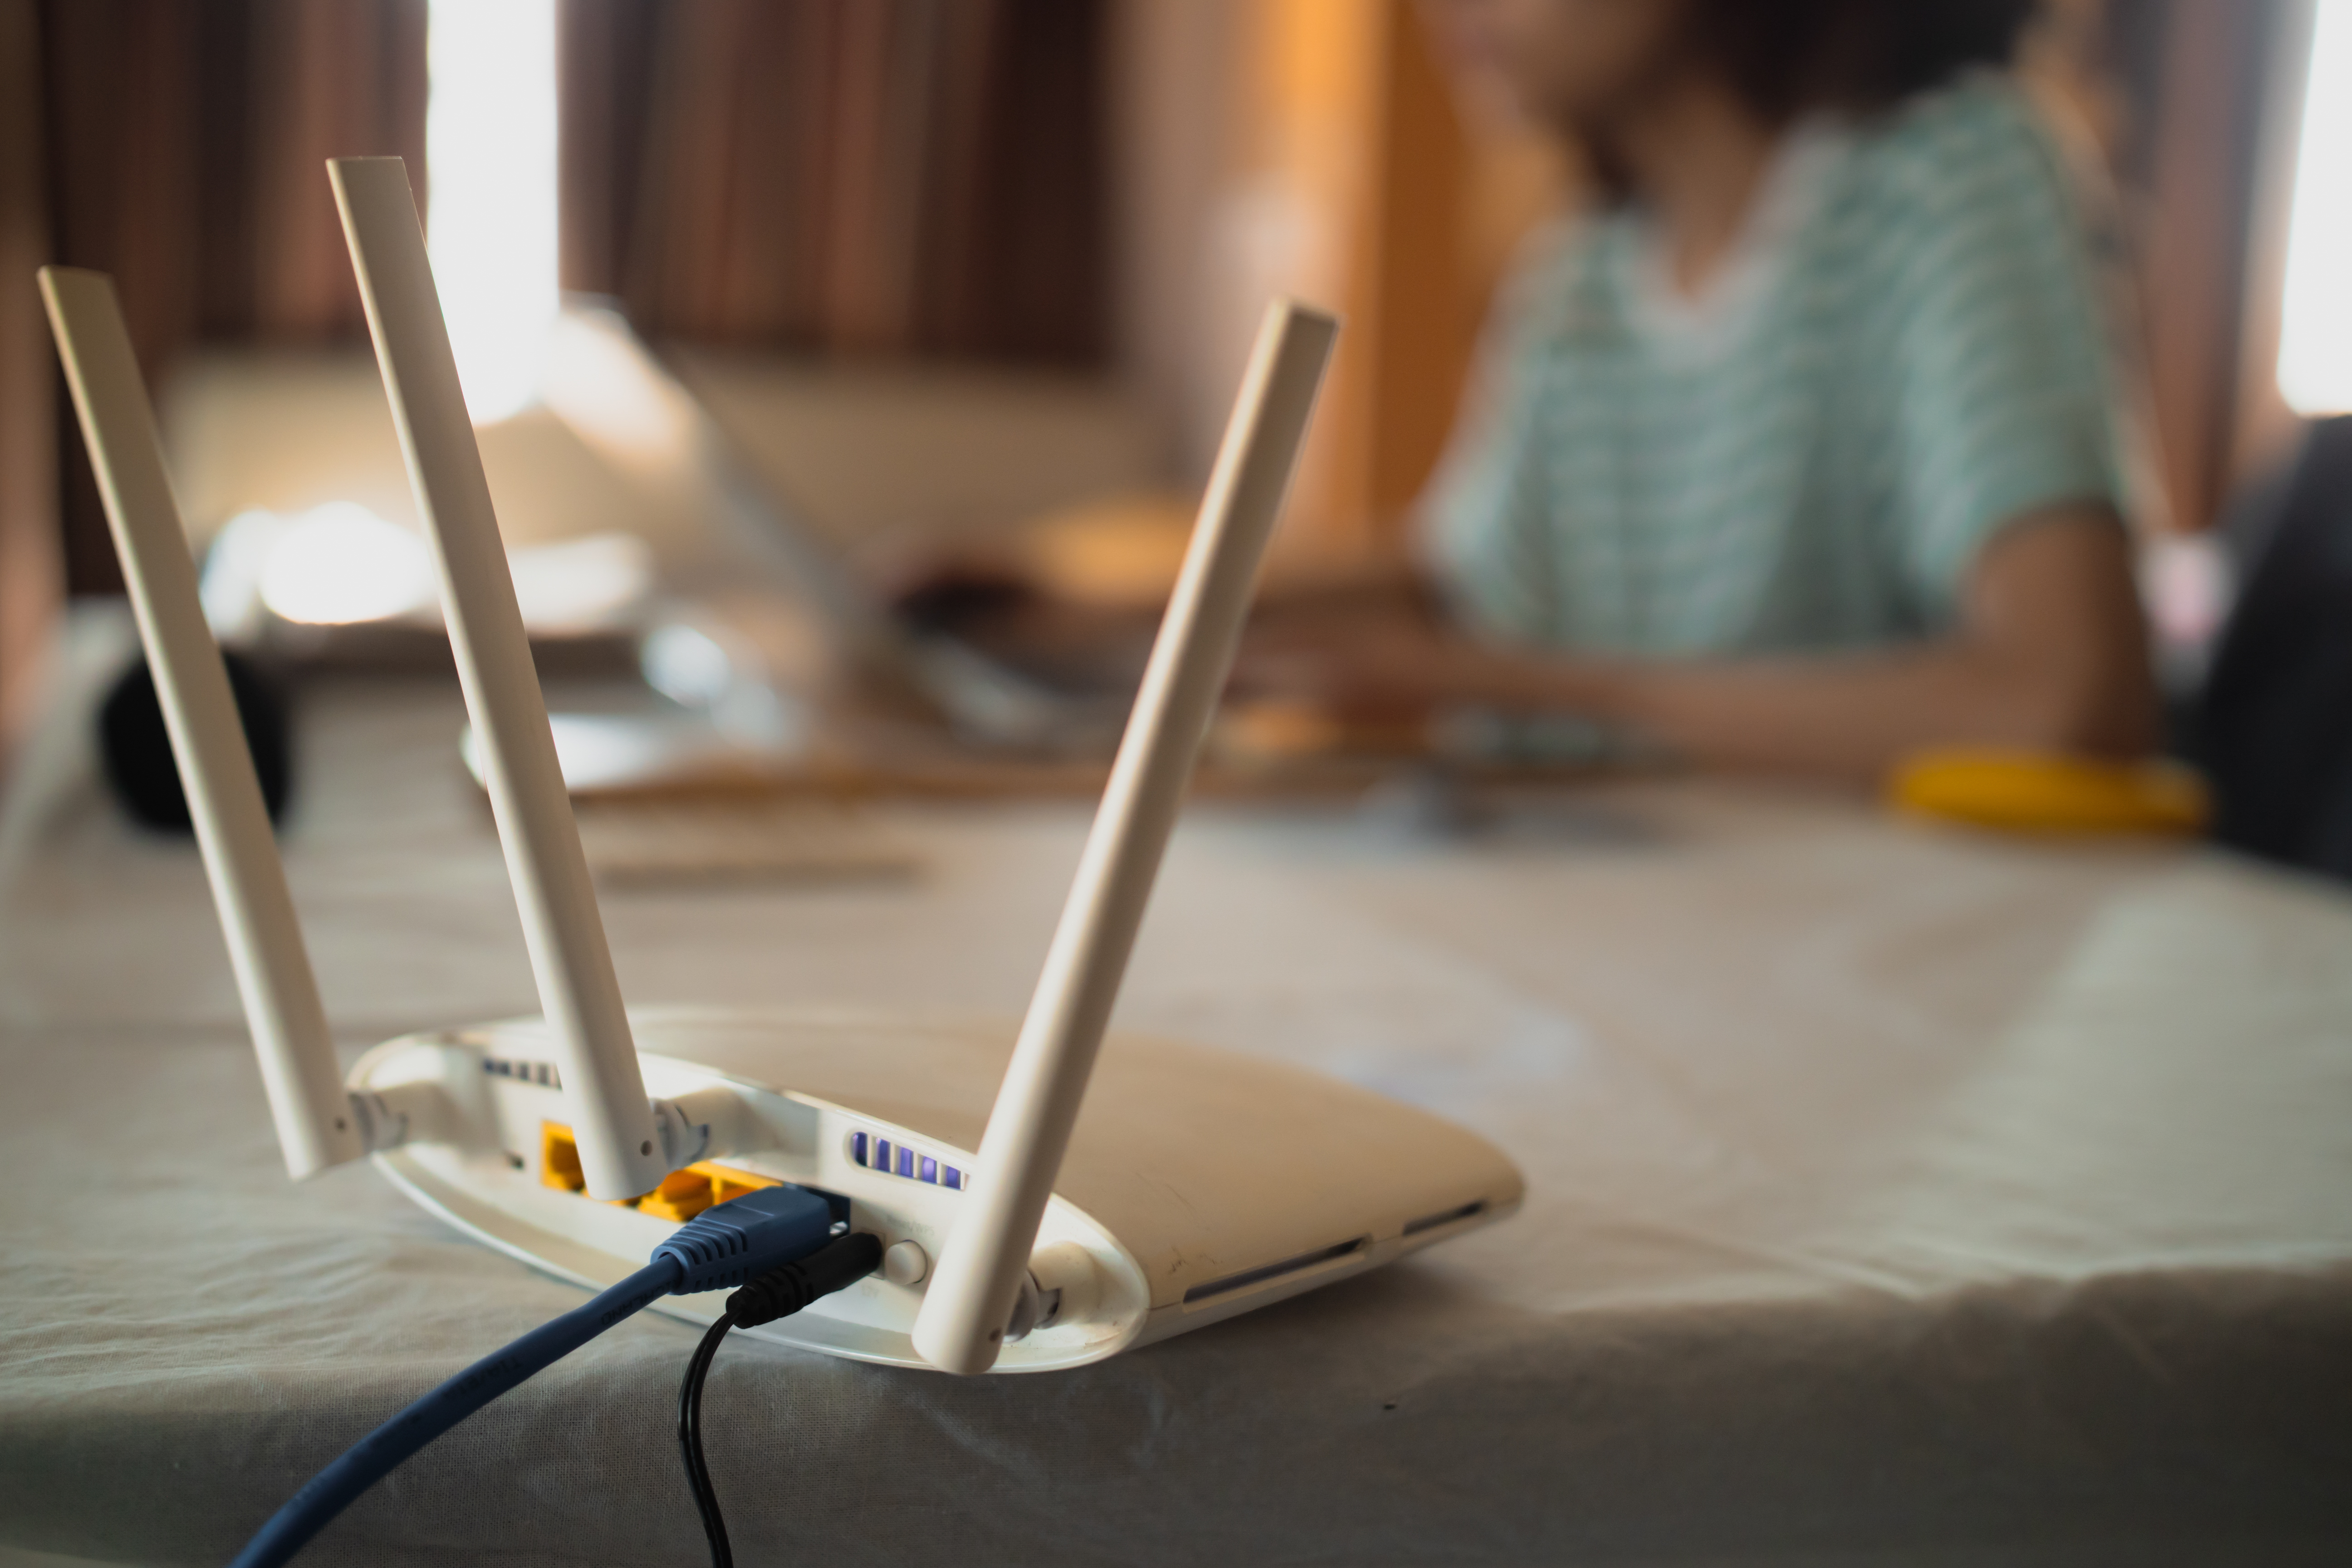 El wifi de la mayoría de hogares se enfrenta al colapso por el aumento de dispositivos conectados y el tráfico de datos